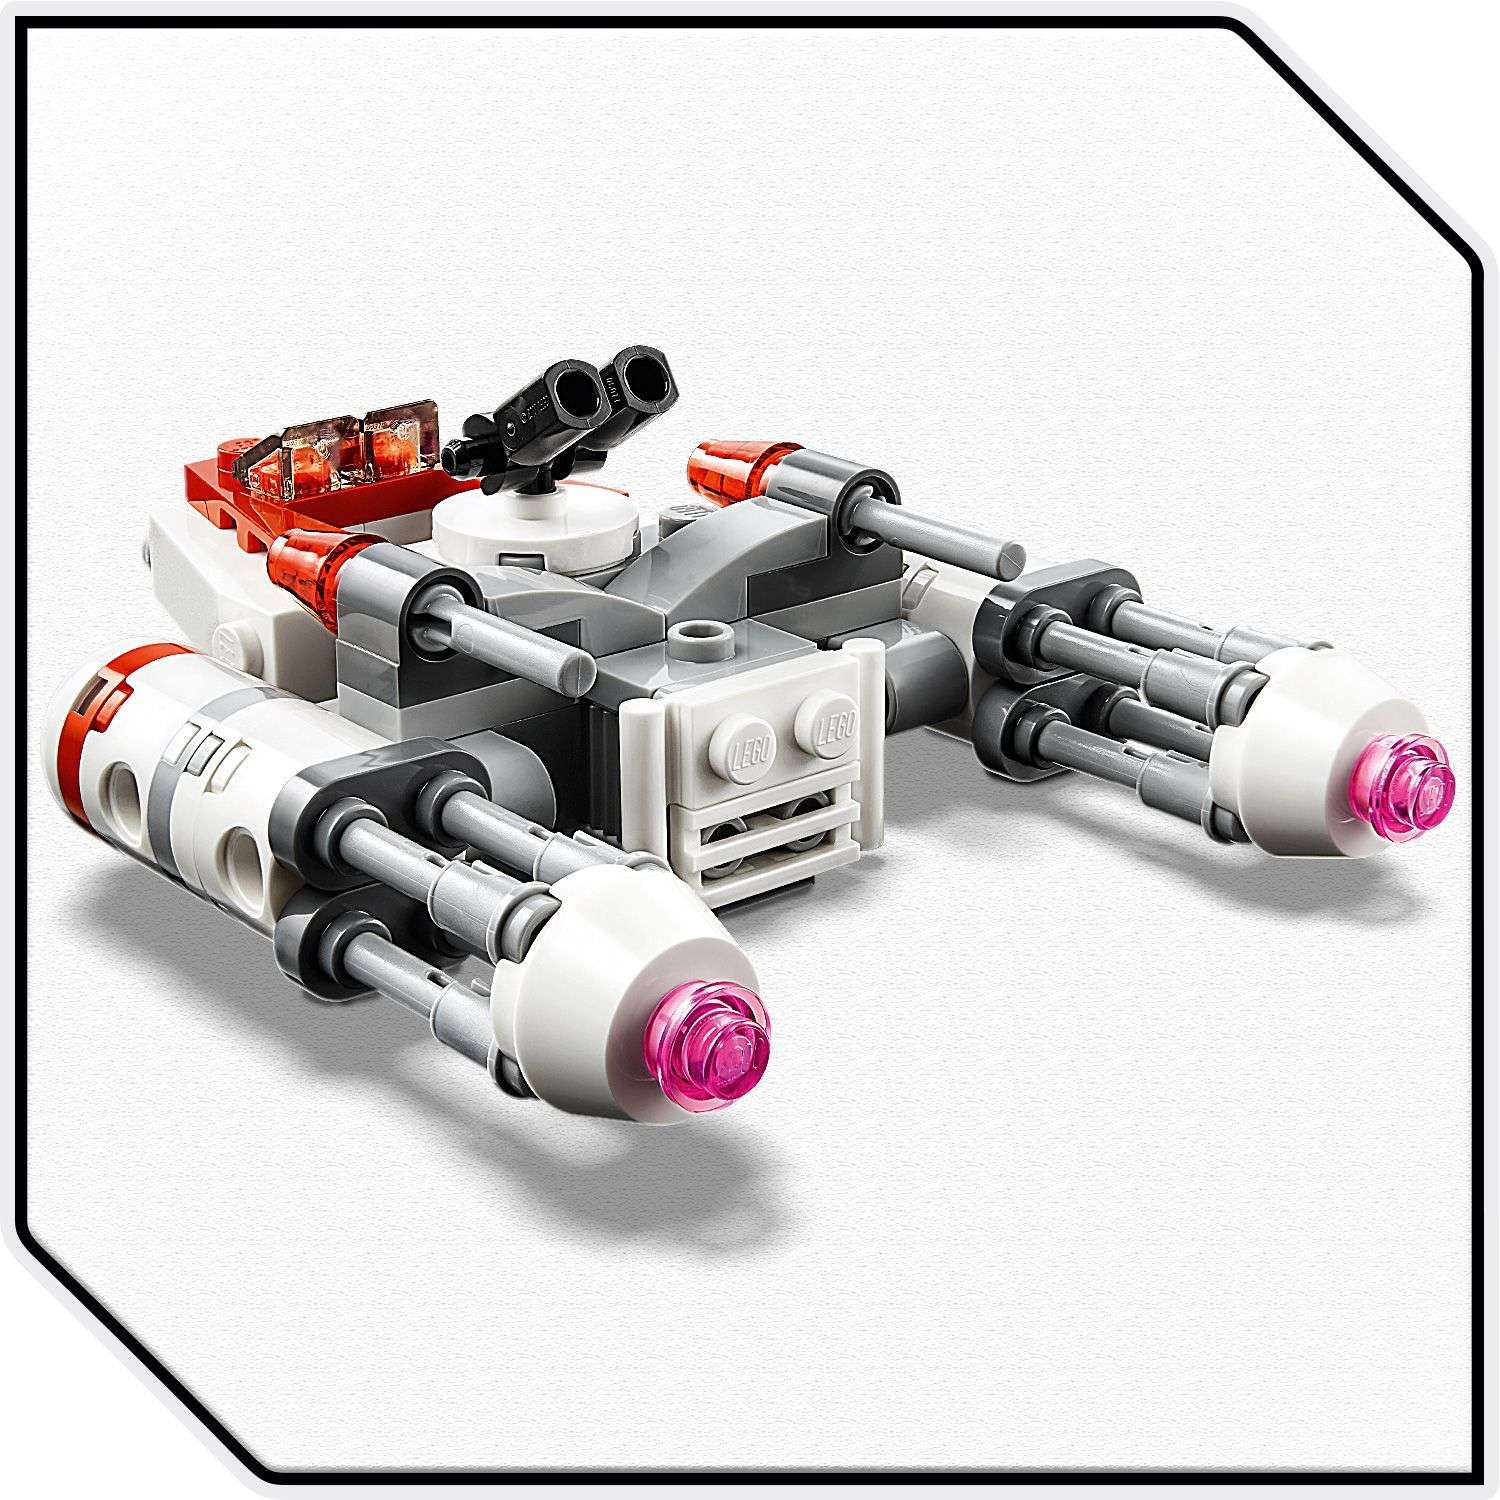 Конструктор LEGO Star Wars Микрофайтеры Истребитель Сопротивления типа Y 75263 - фото 6